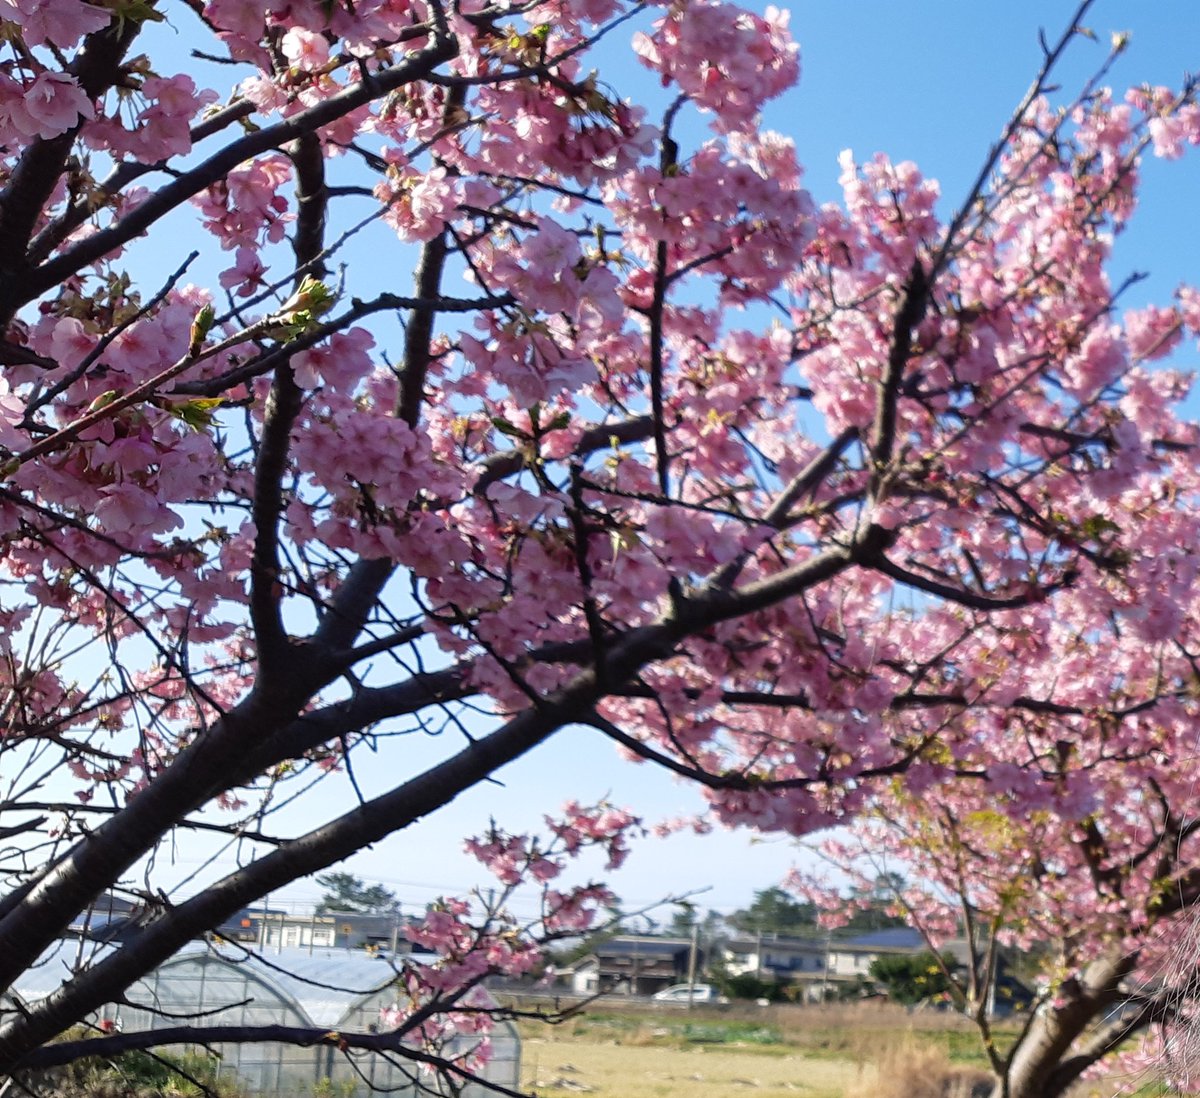 今日のお花です…河津桜と菜の花が満開だよ…( ⸝⸝⸝ᵕ ̫ ᵕ⸝⸝⸝ )遠くから撮ったからブレてるね 